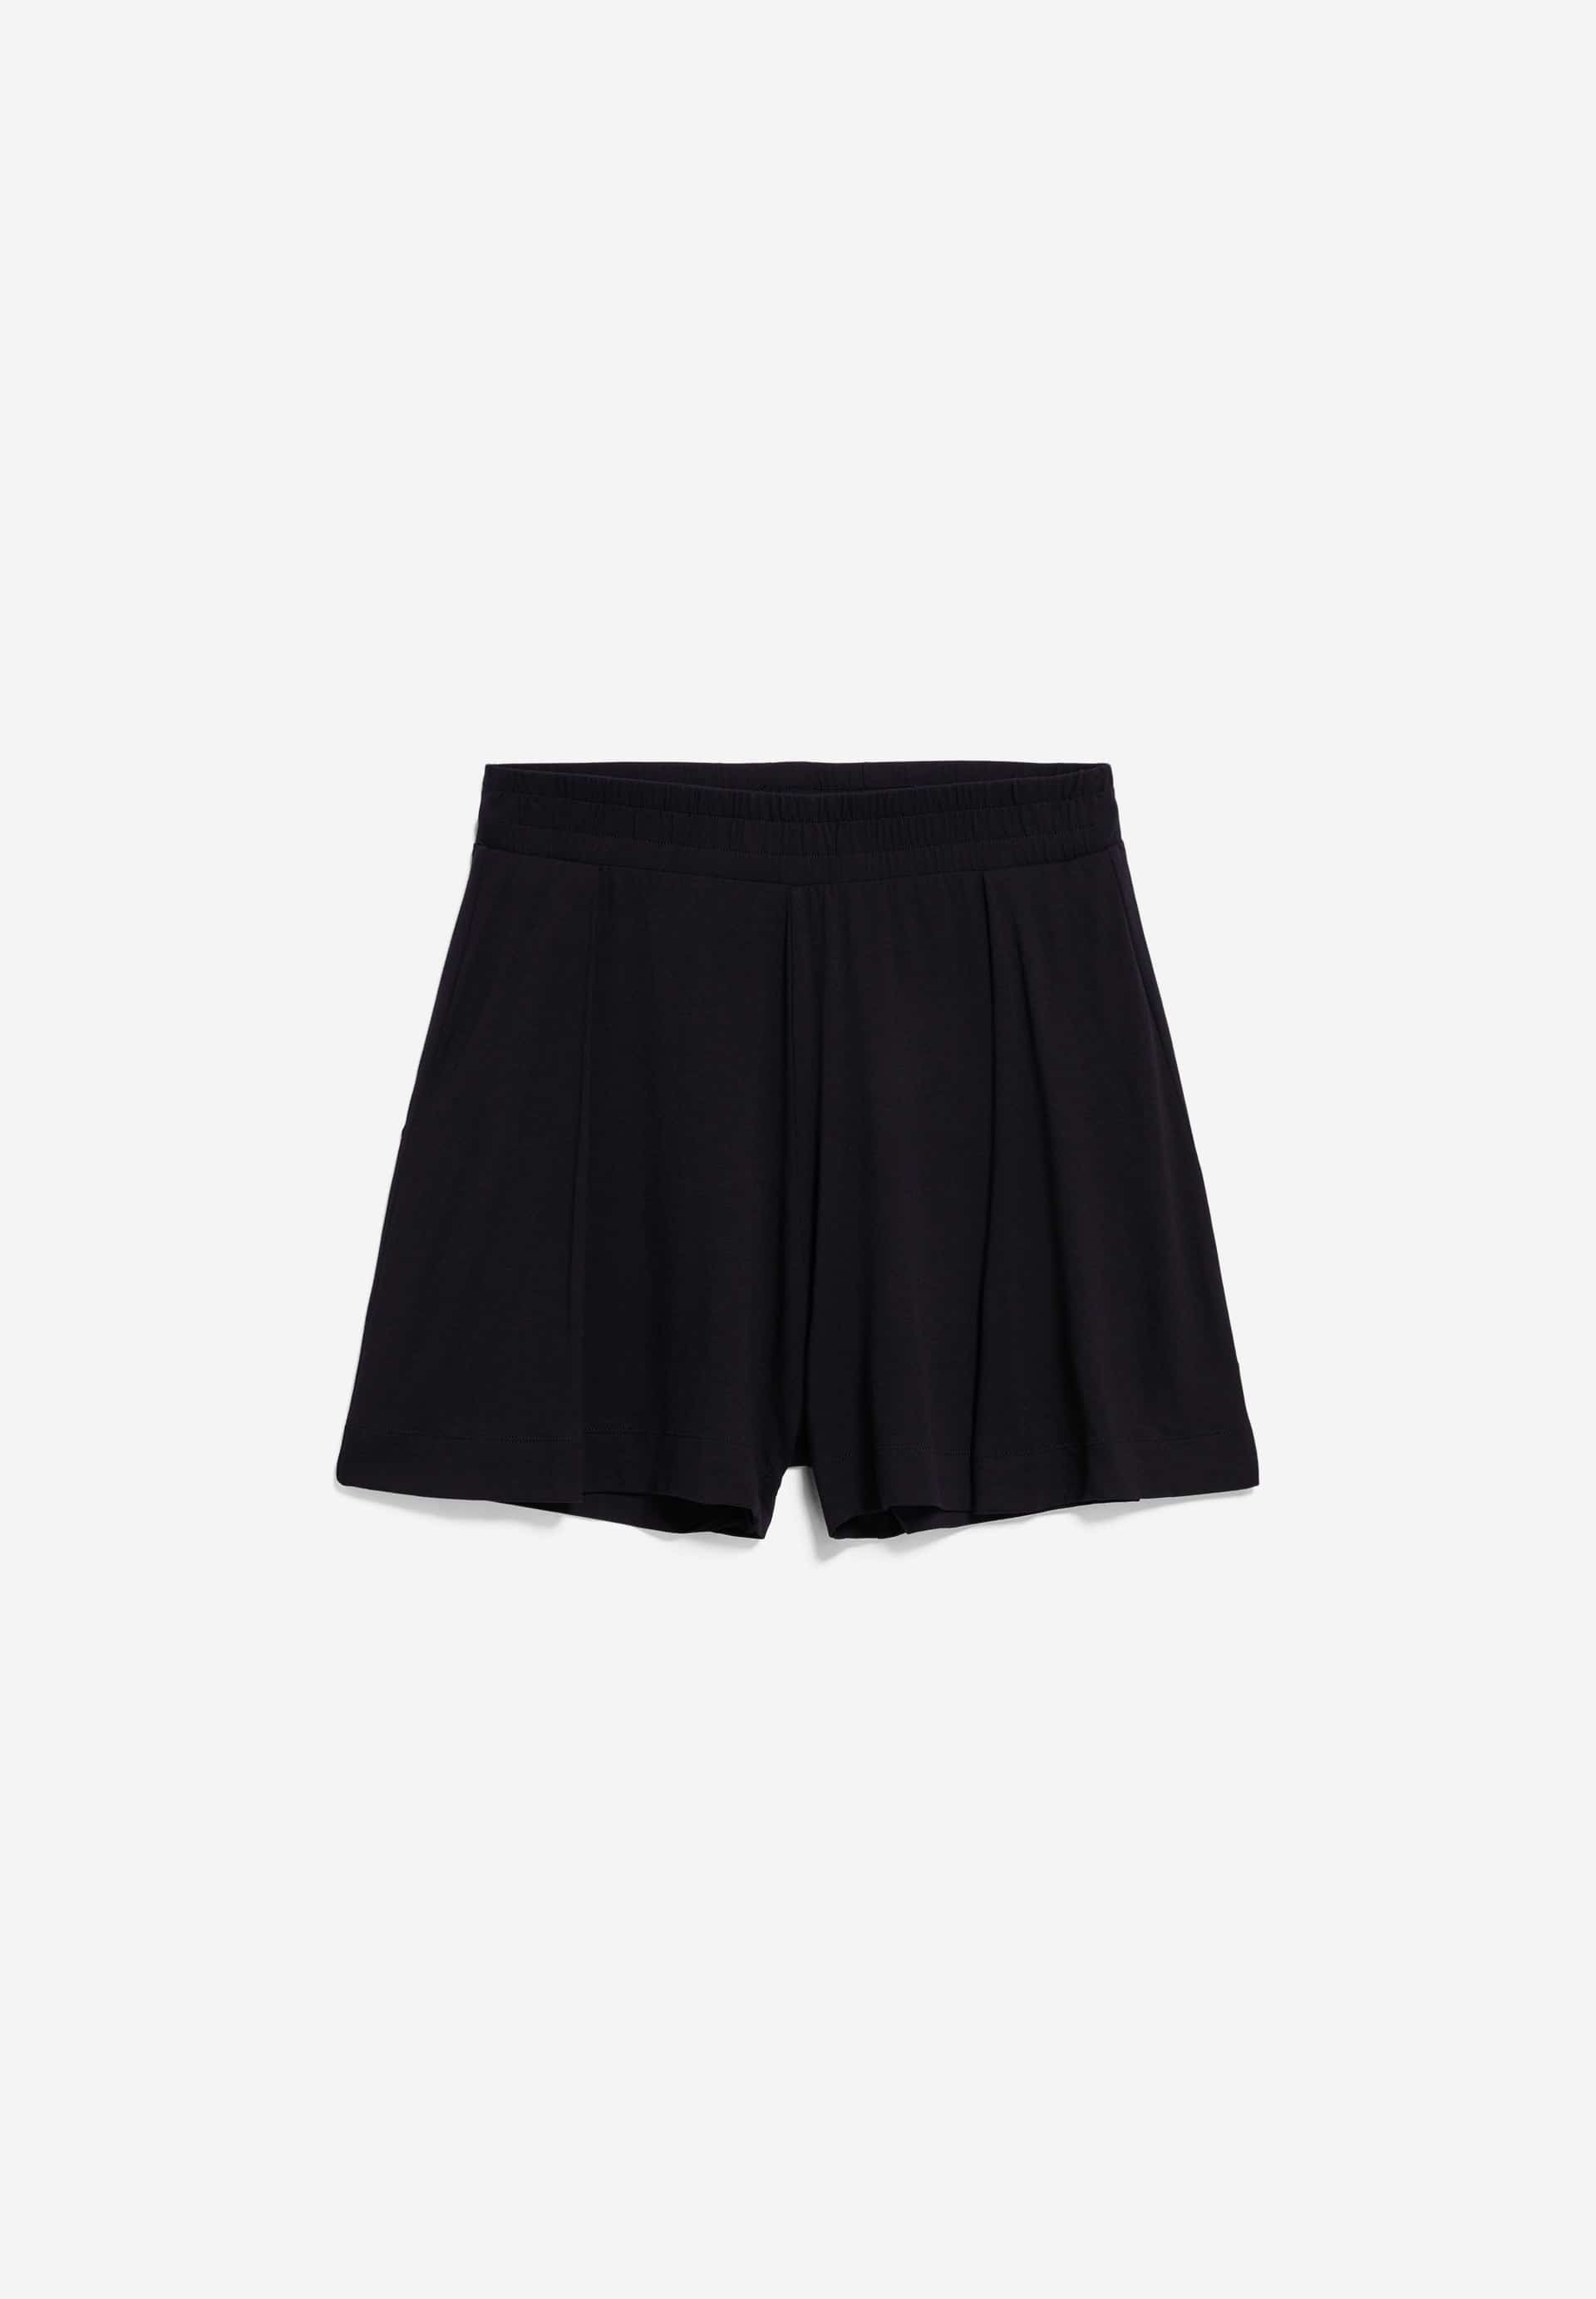 AAREZU Shorts made of LENZING™ ECOVERO™ Viscose Mix